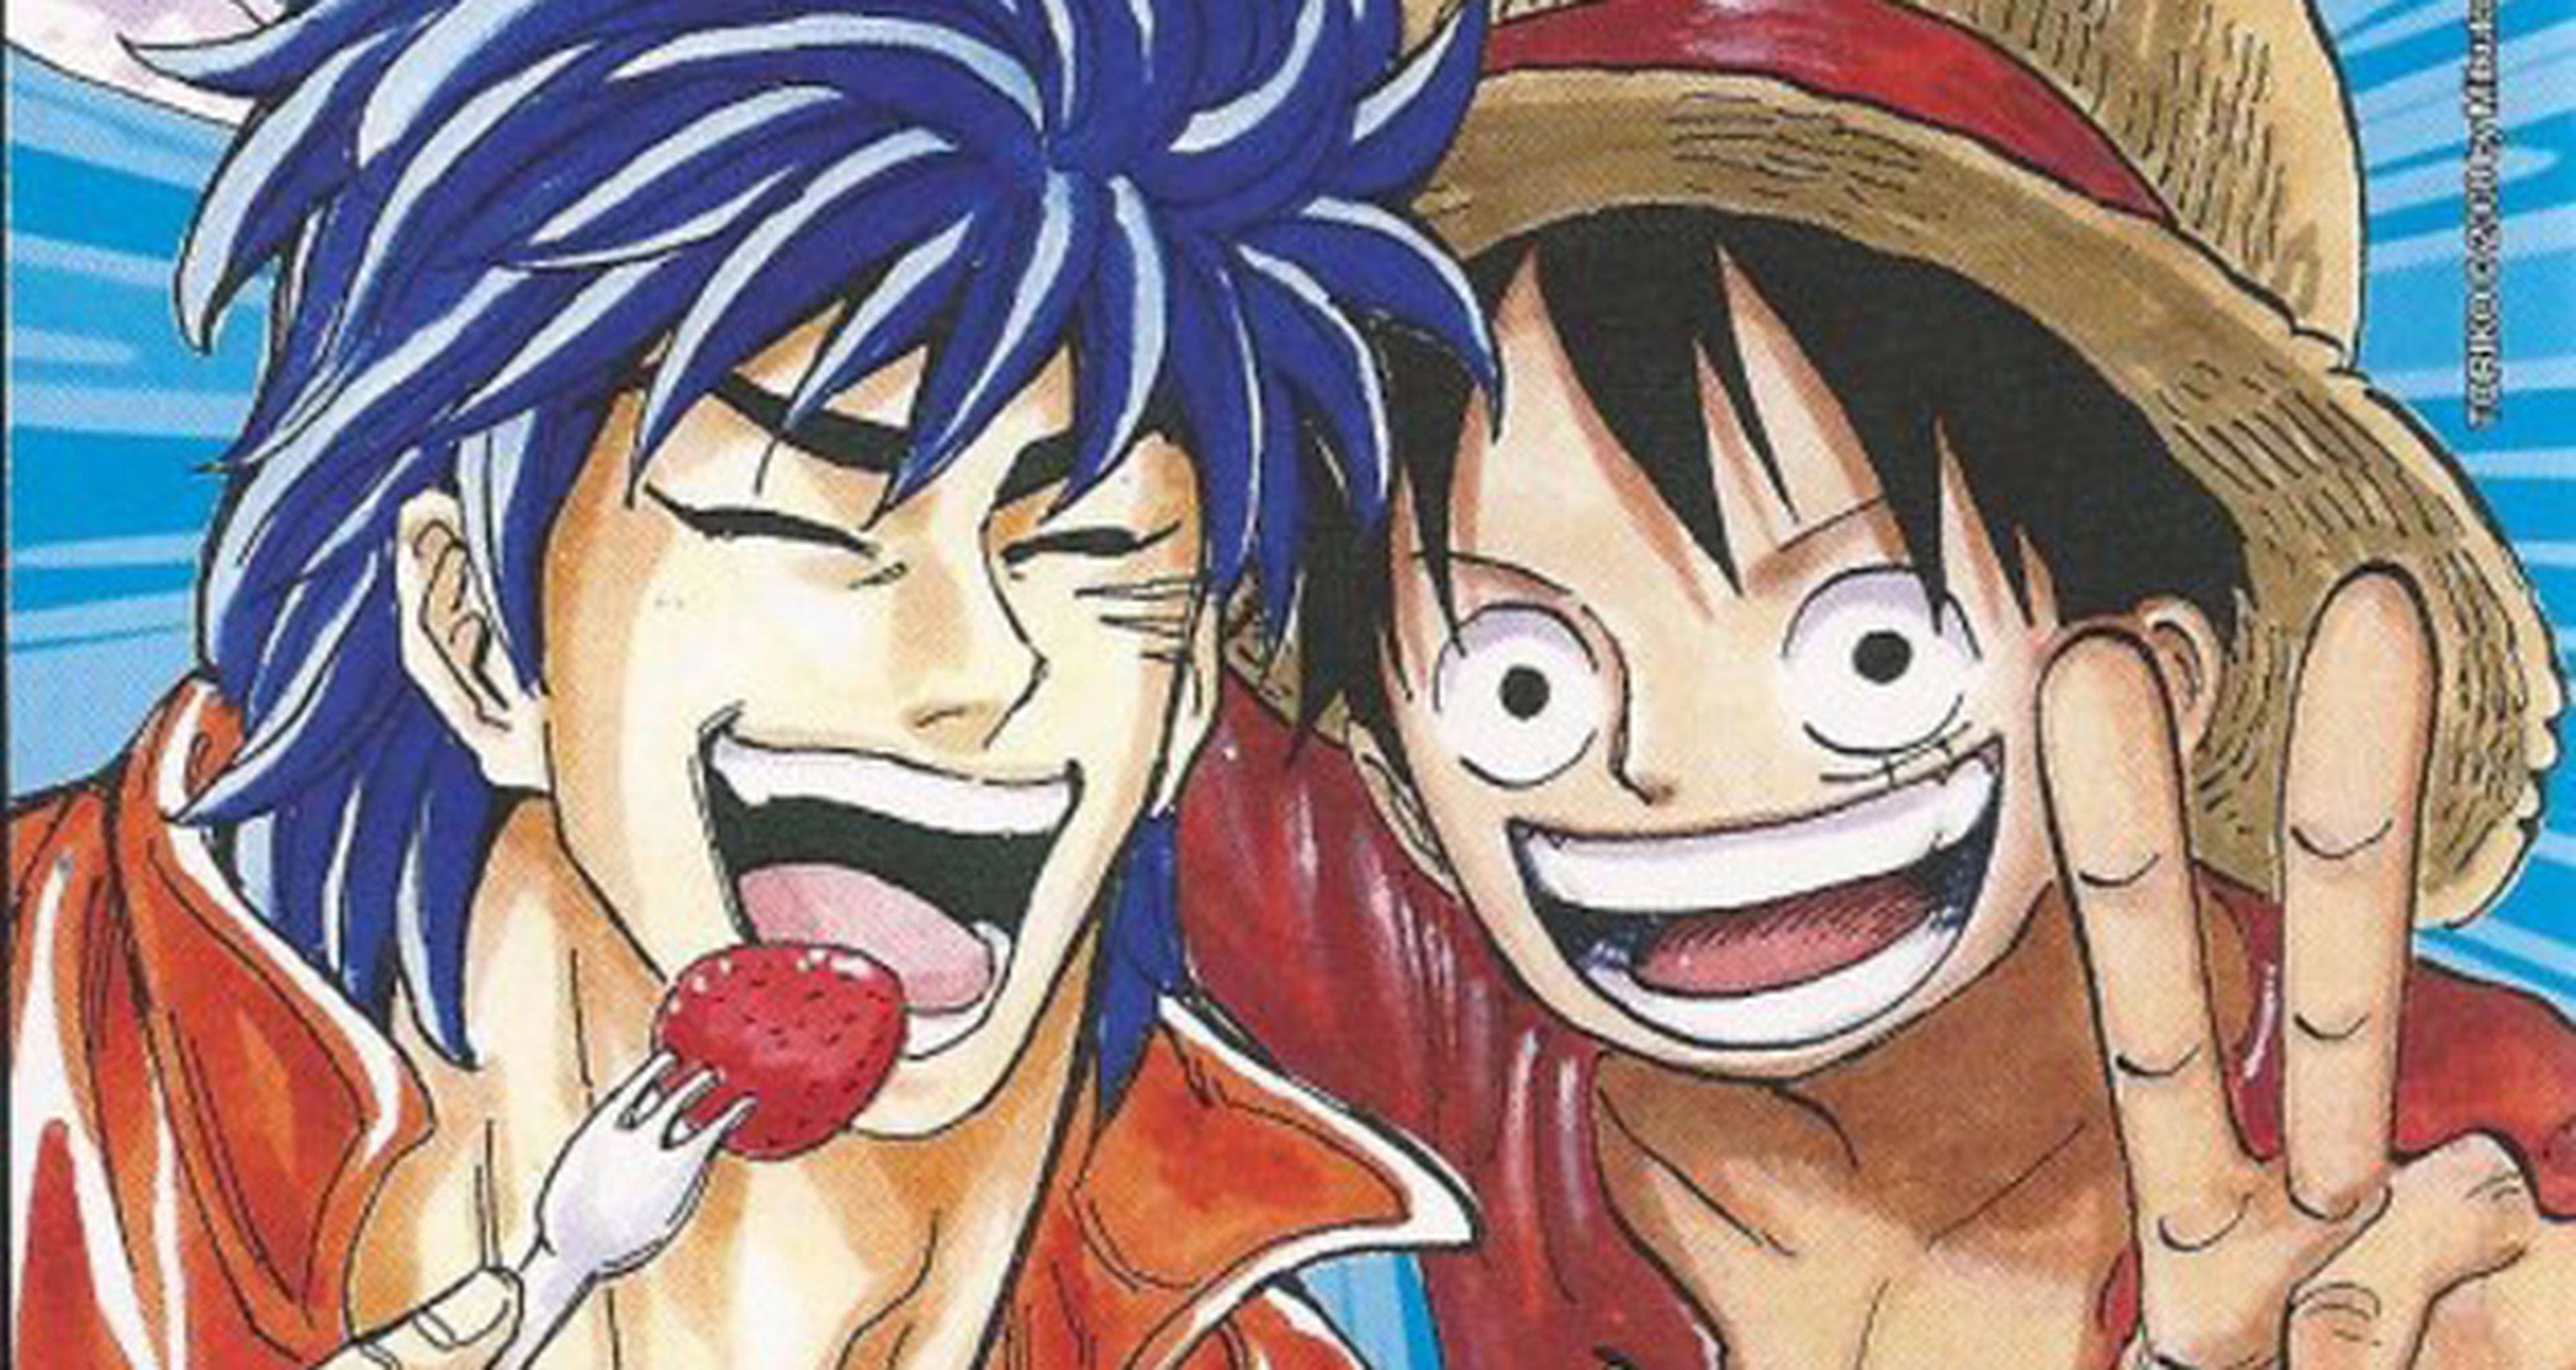 Exposición de One Piece y Toriko en el Salón del Manga